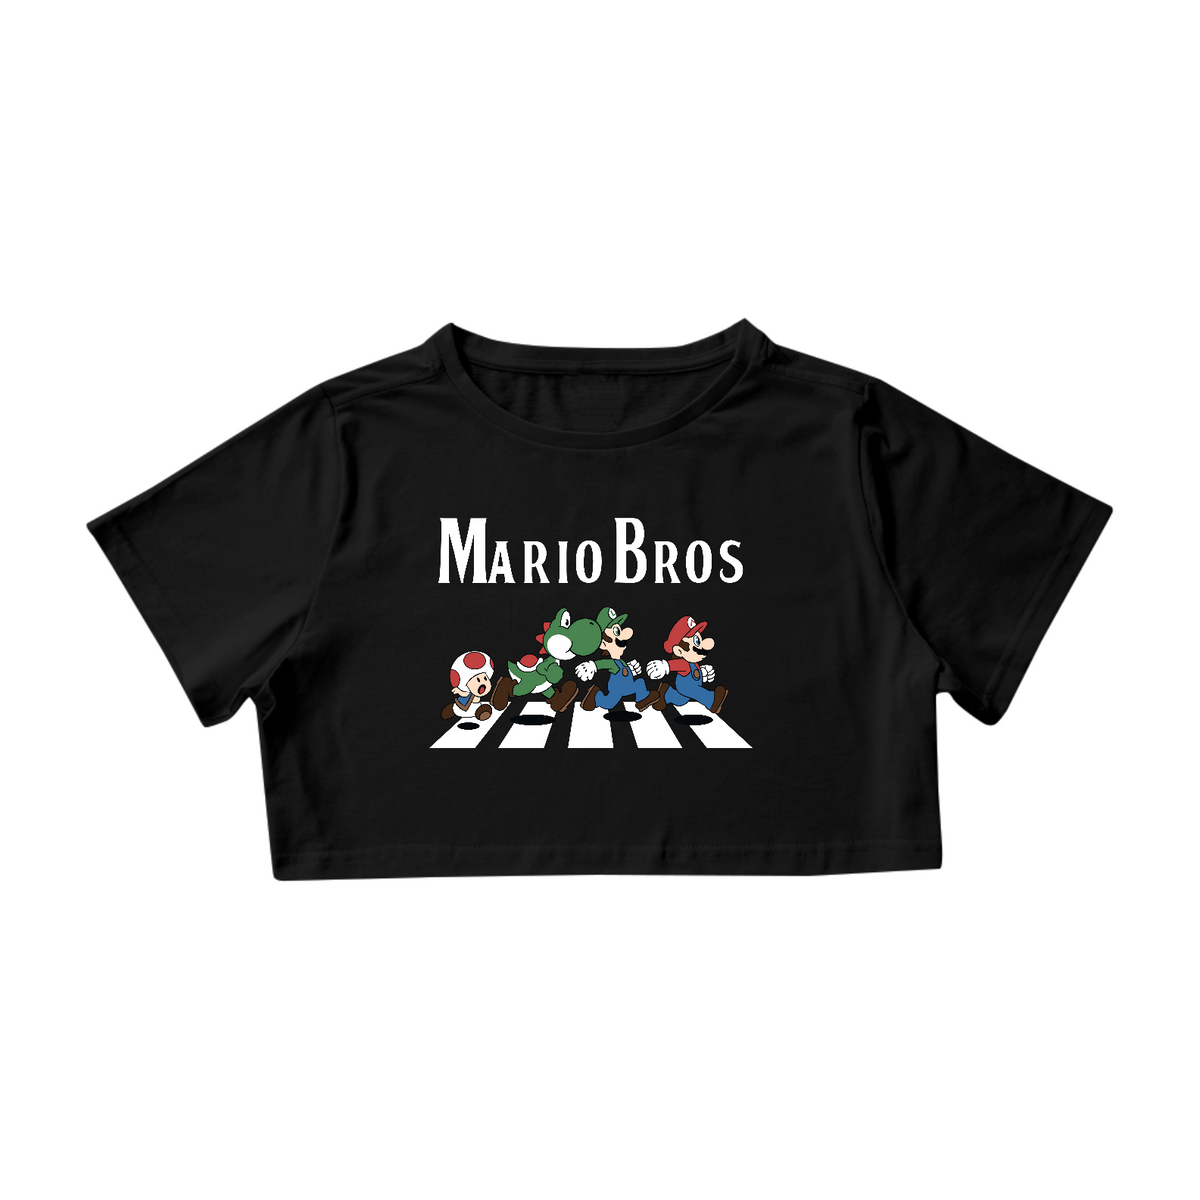 Nome do produto: The Mario Bros